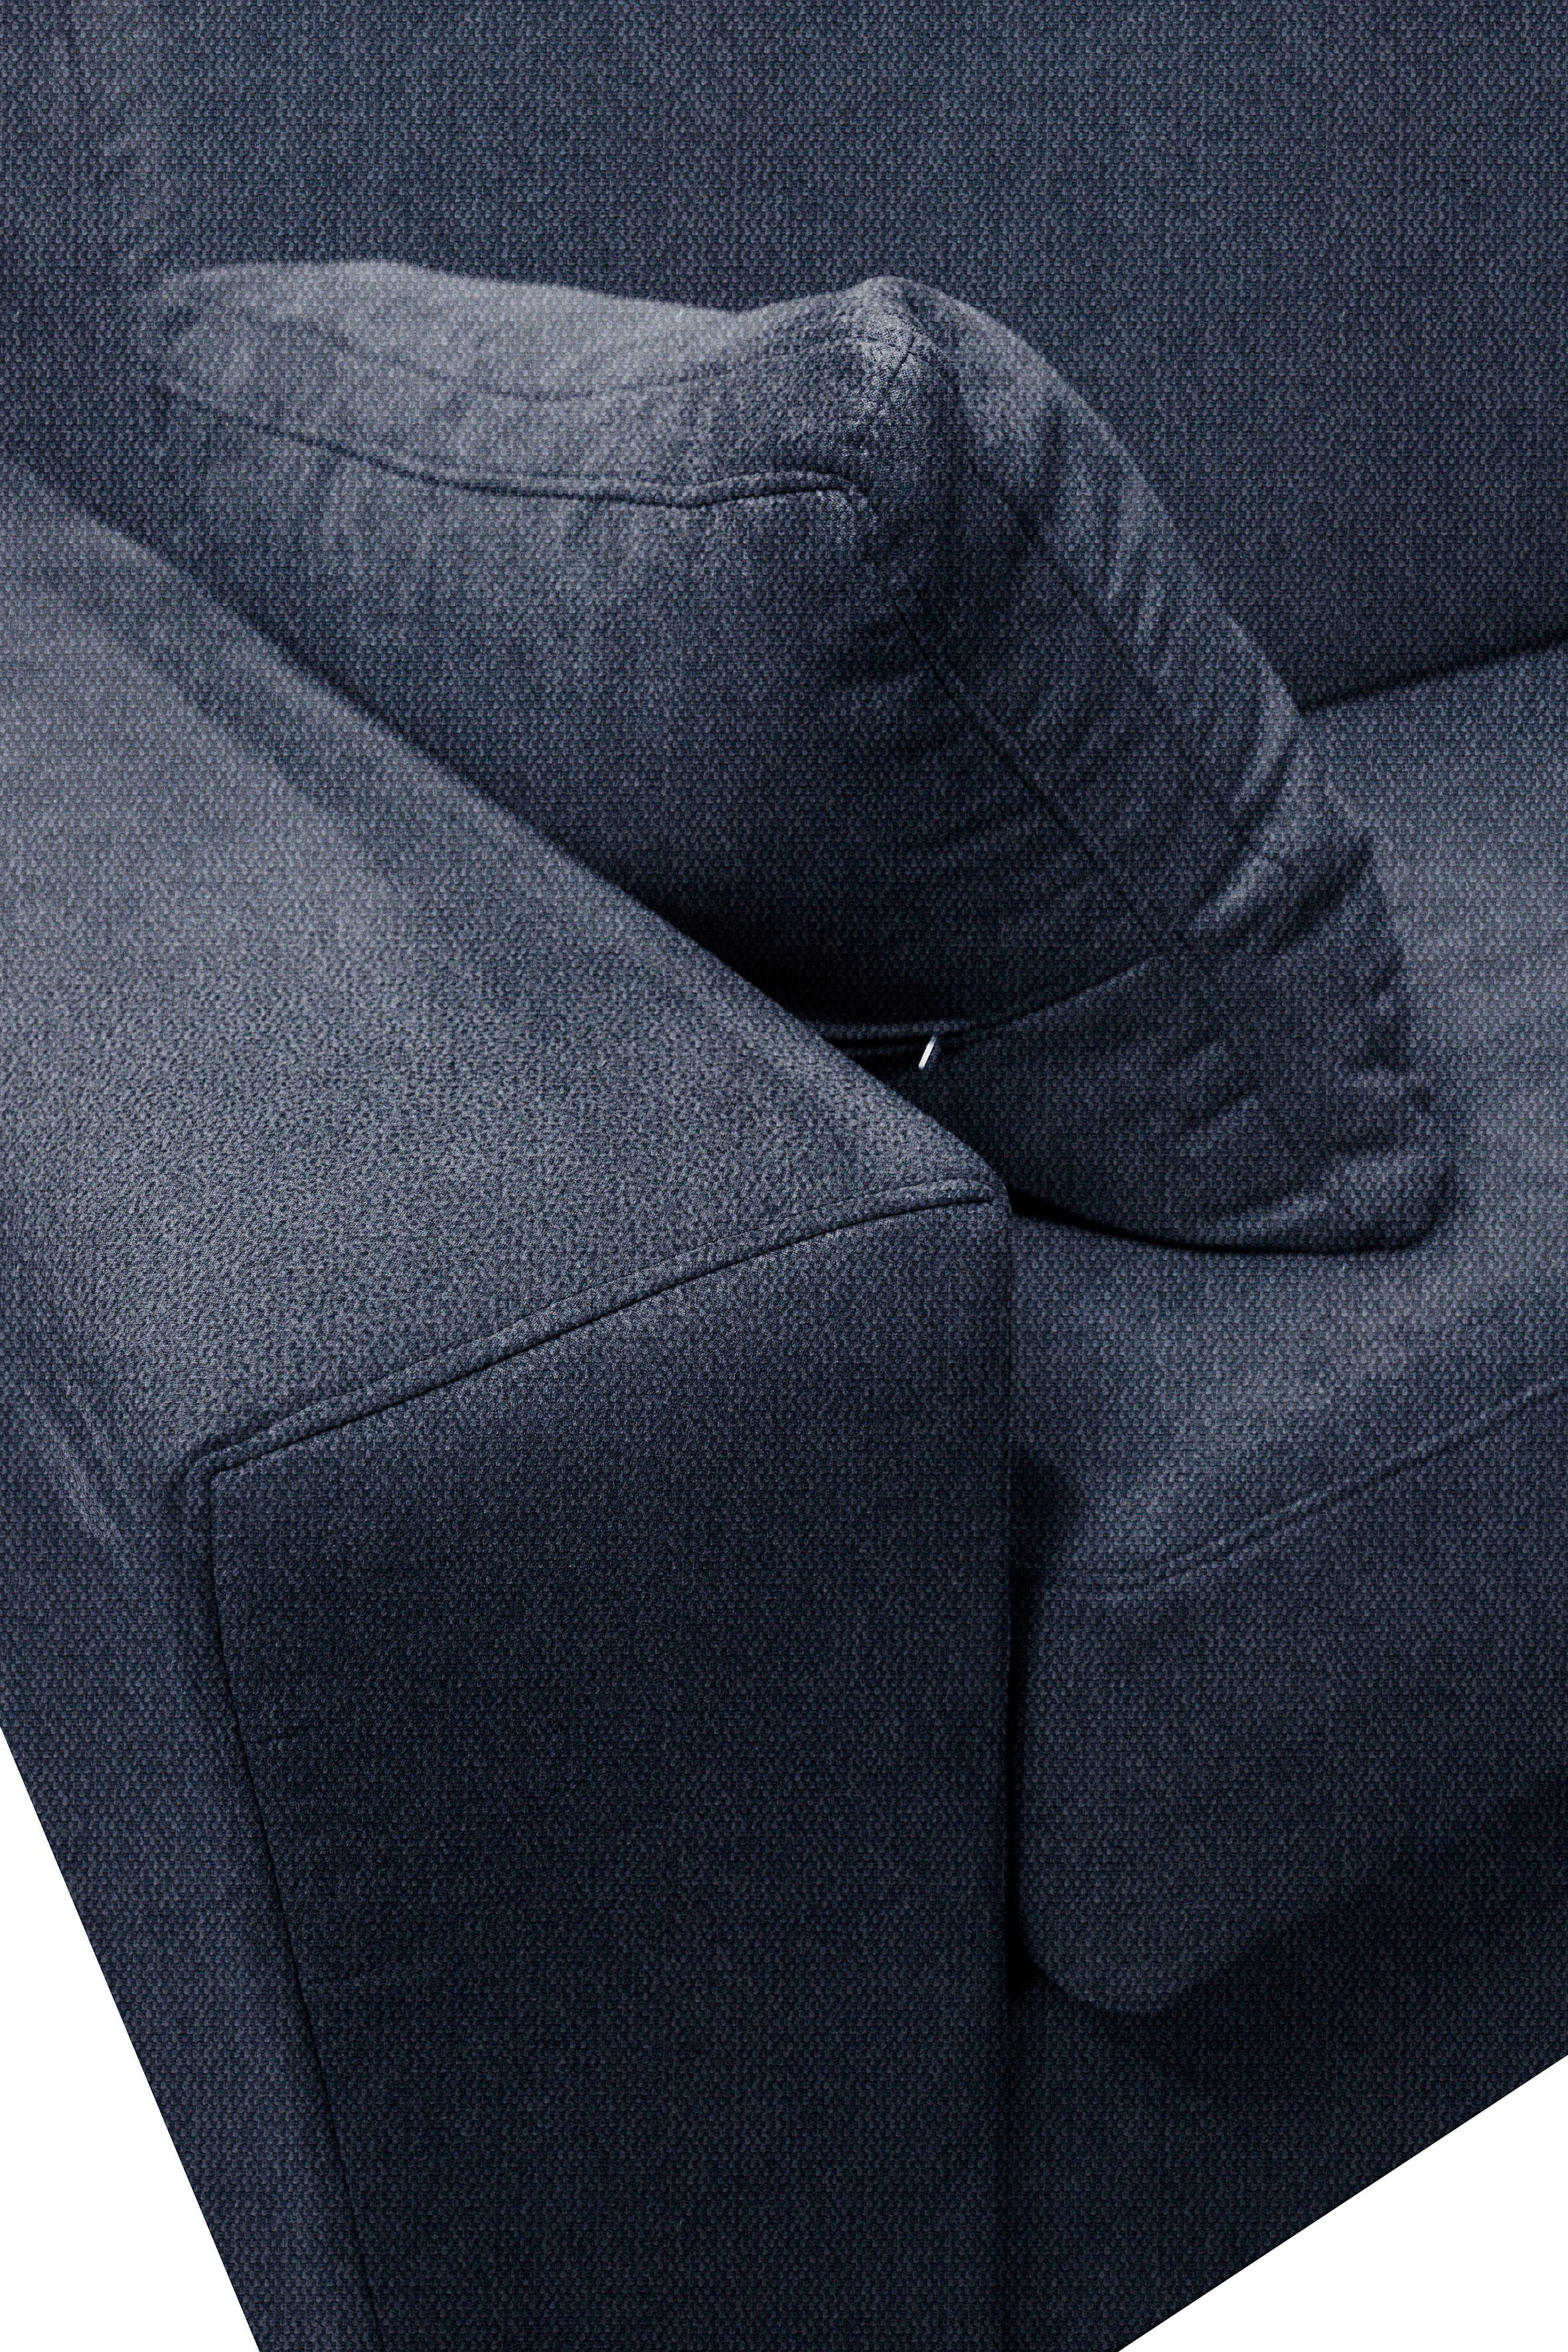 Home affaire Sessel Roma, Dauerschlaffunktion, mit Unterfederung, ca 83x198 Liegemaße cm